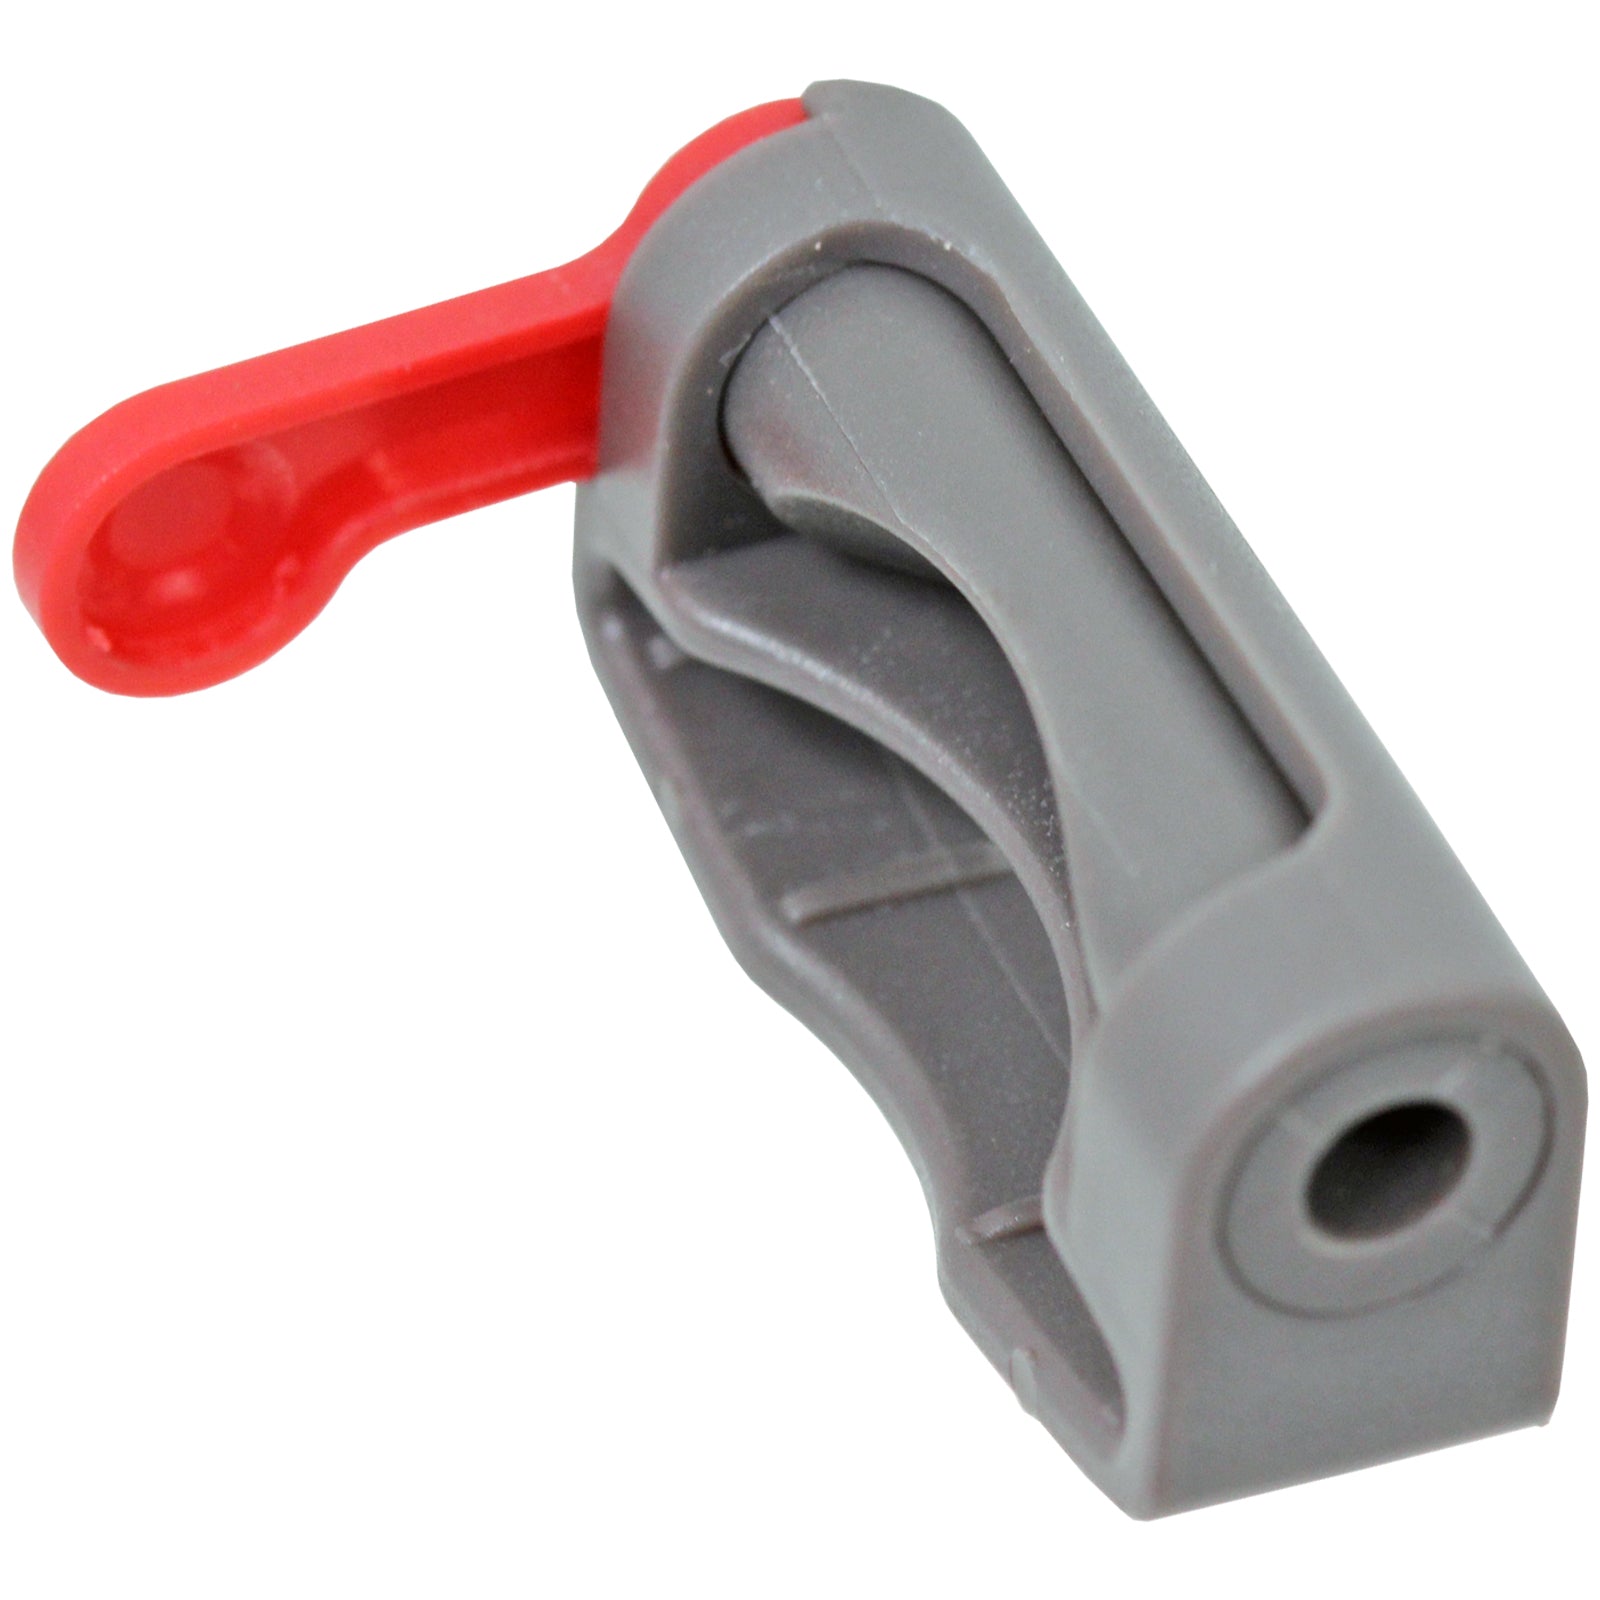 Trigger Lock for DYSON SV03 SV04 SV07 SV09 Vacuum Cleaner Cordless Power Holder Button